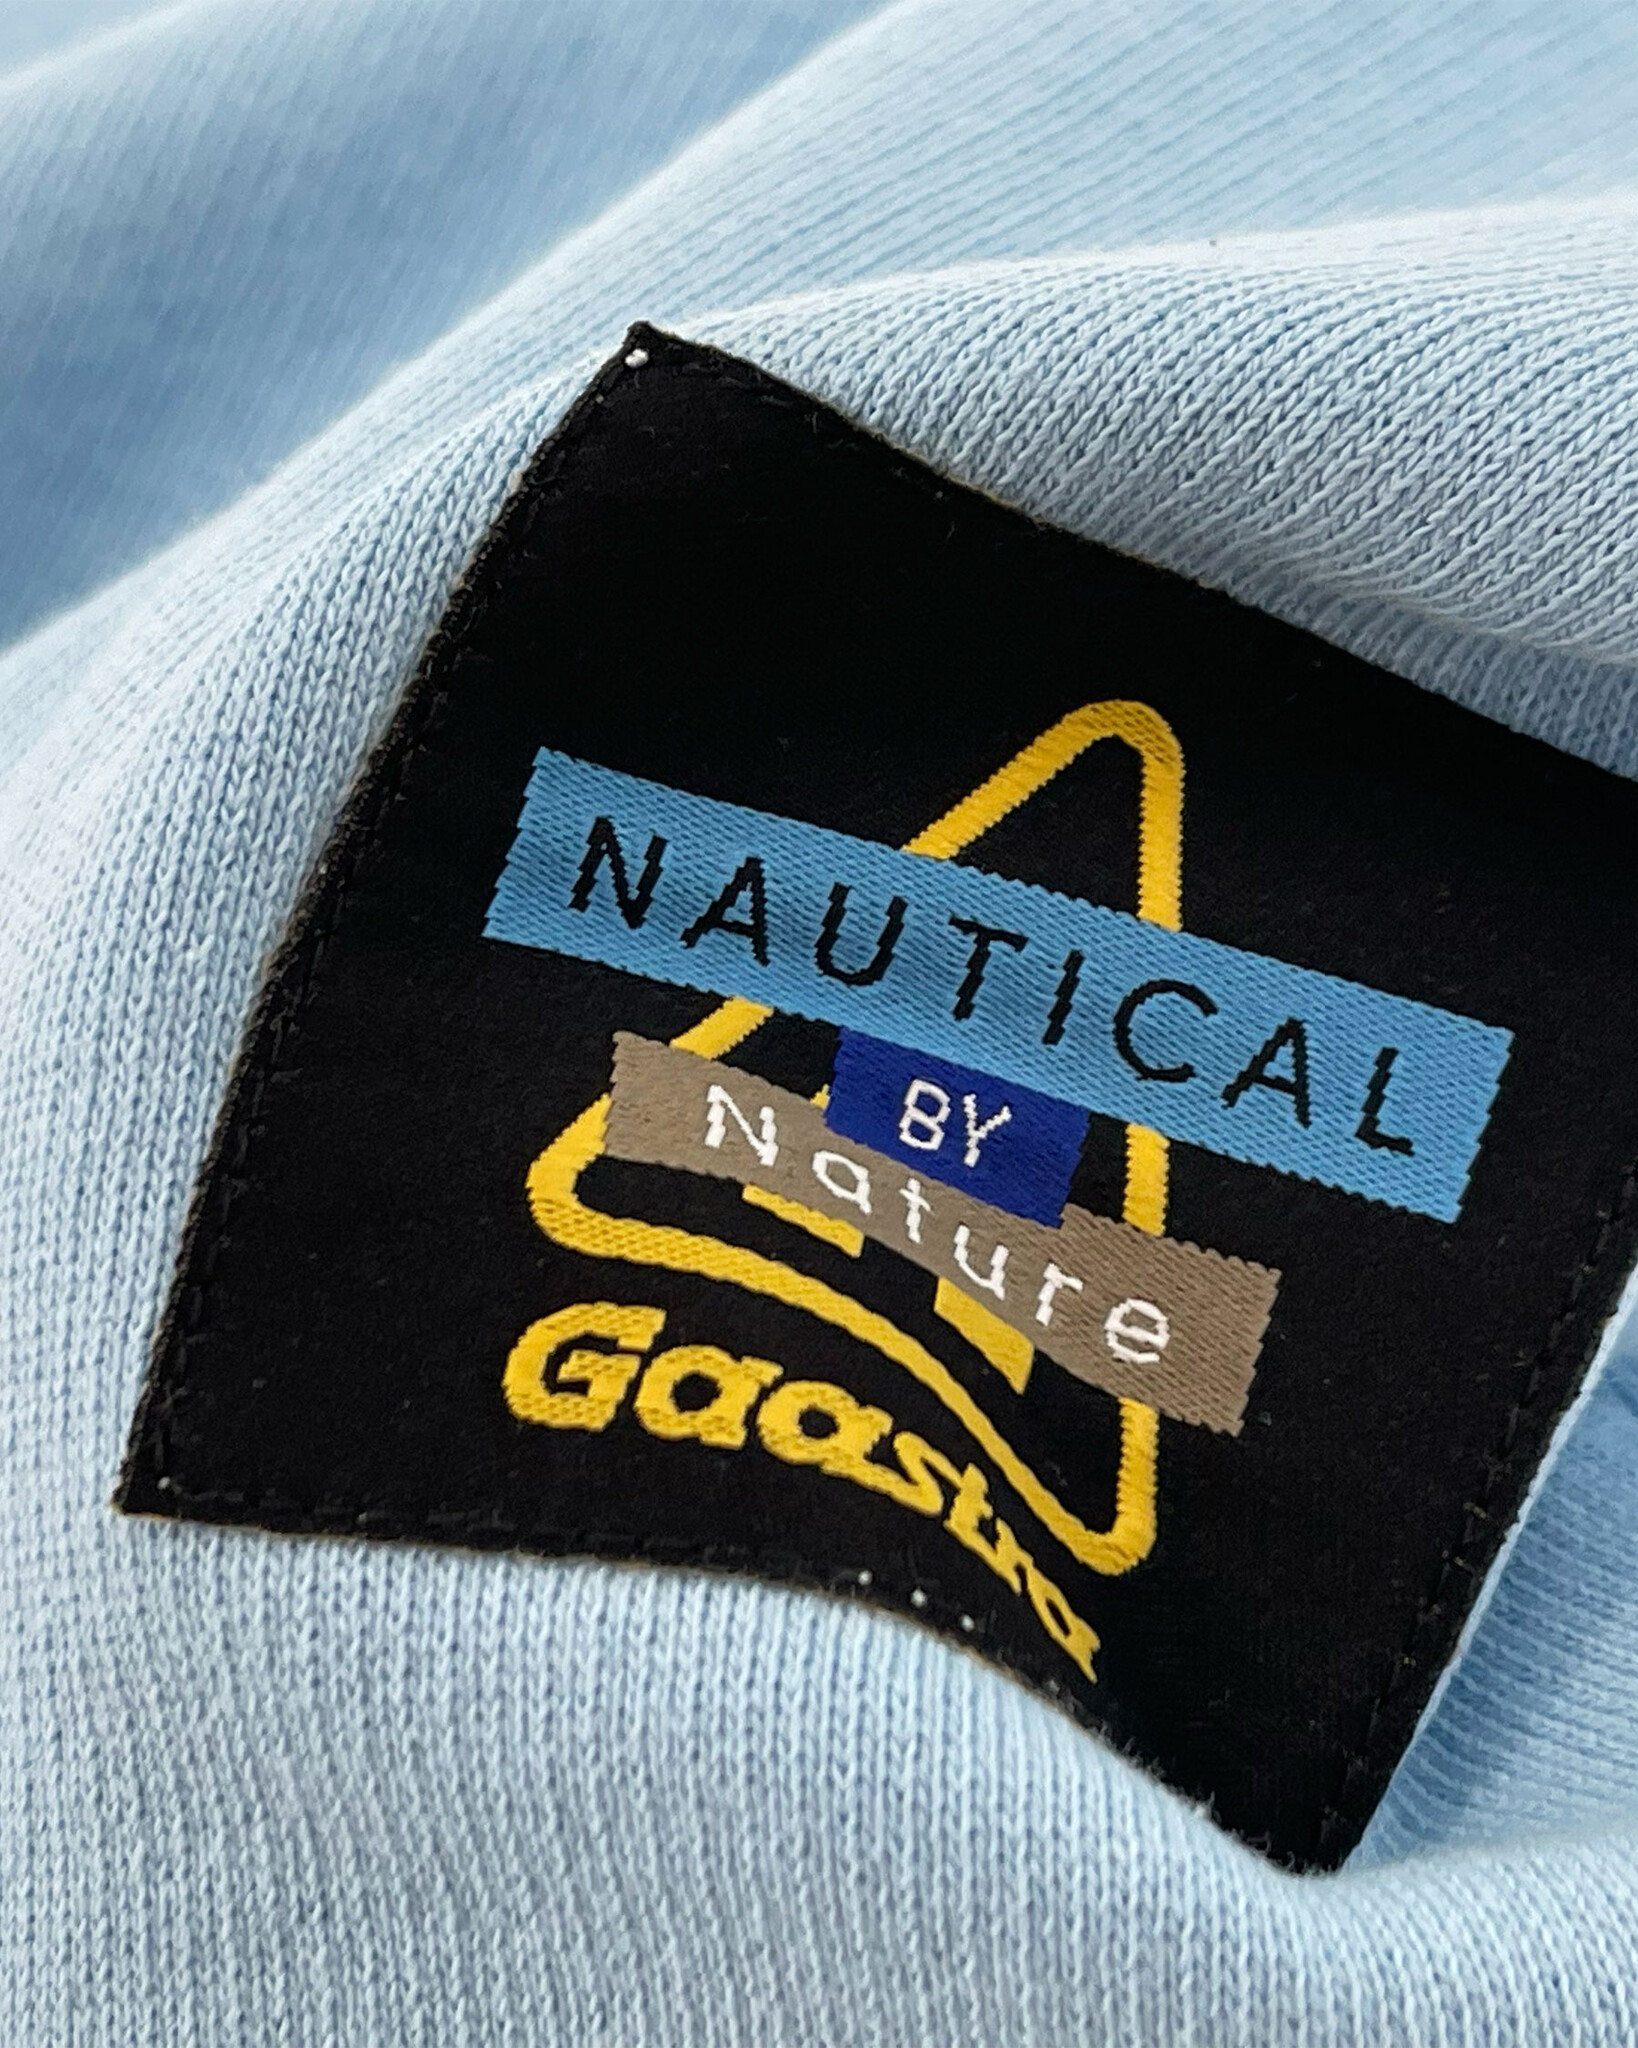 Half zip Sweatshirt aus dem einzigartigen Gaastra Vintage-Sportprogramm